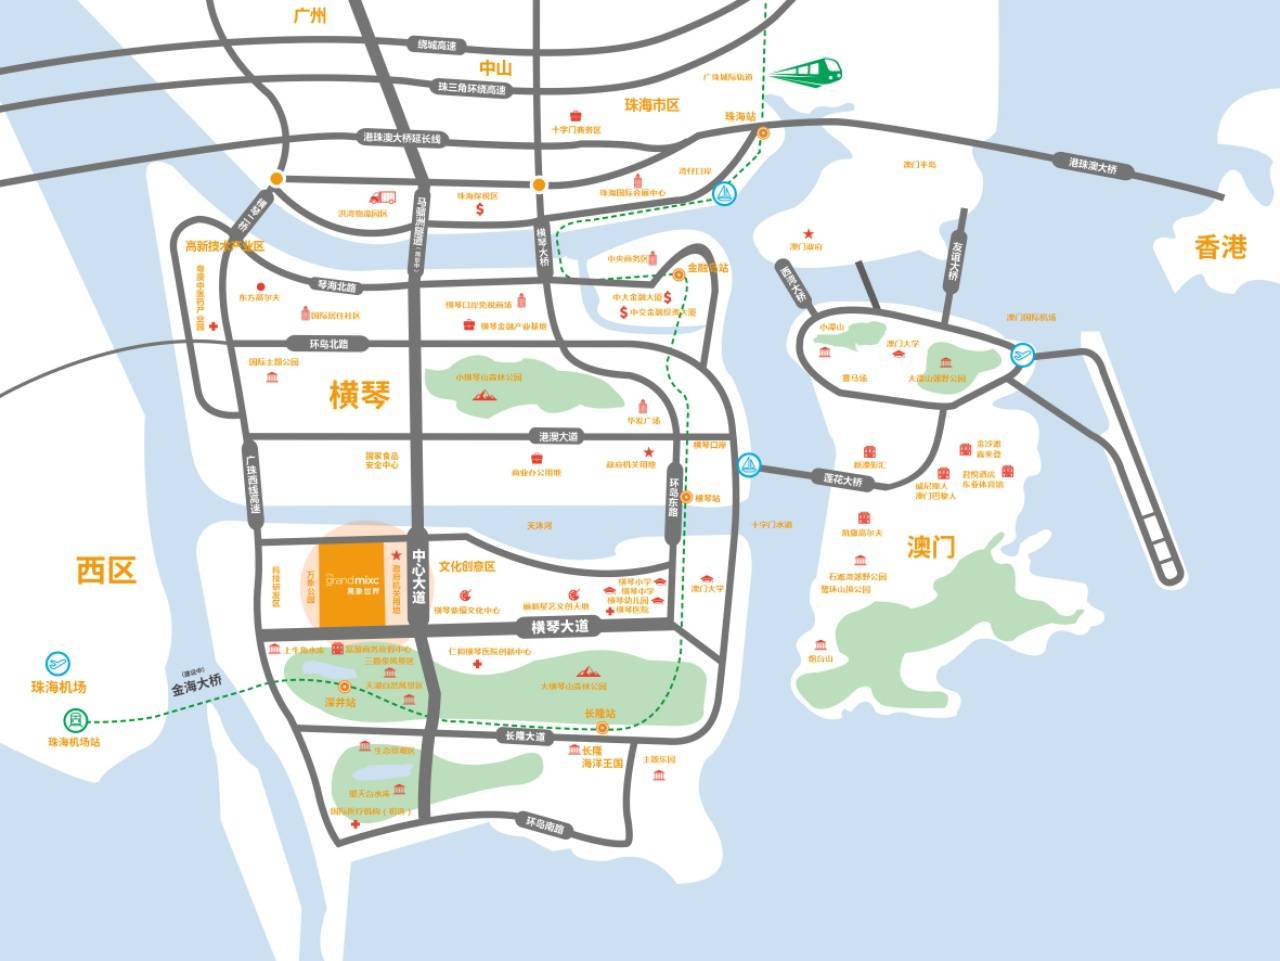 从地图上来看,横琴华润万象世界占据着横琴自贸区金融岛的中心,距离